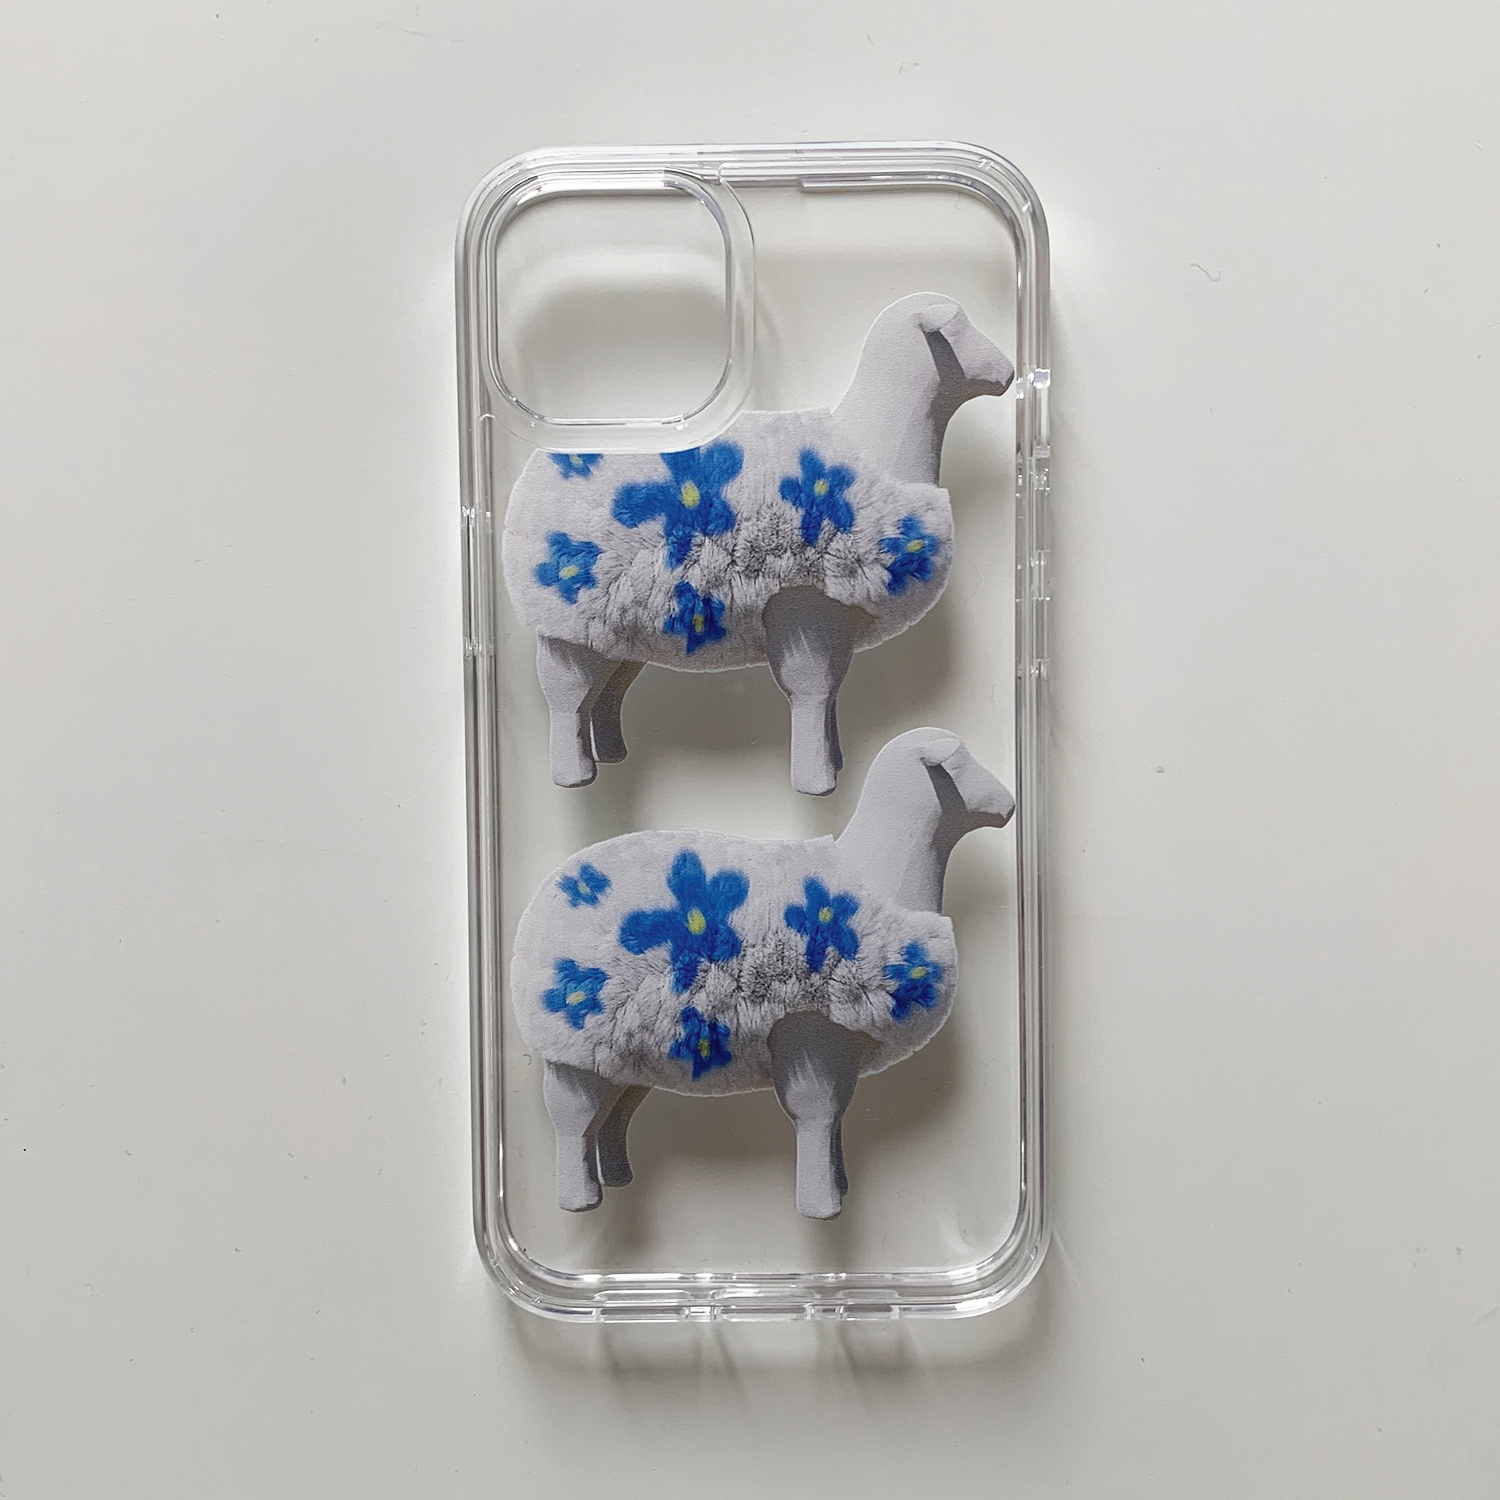 SHEEP FLOWER Jelly hard case / 젤리하드 케이스